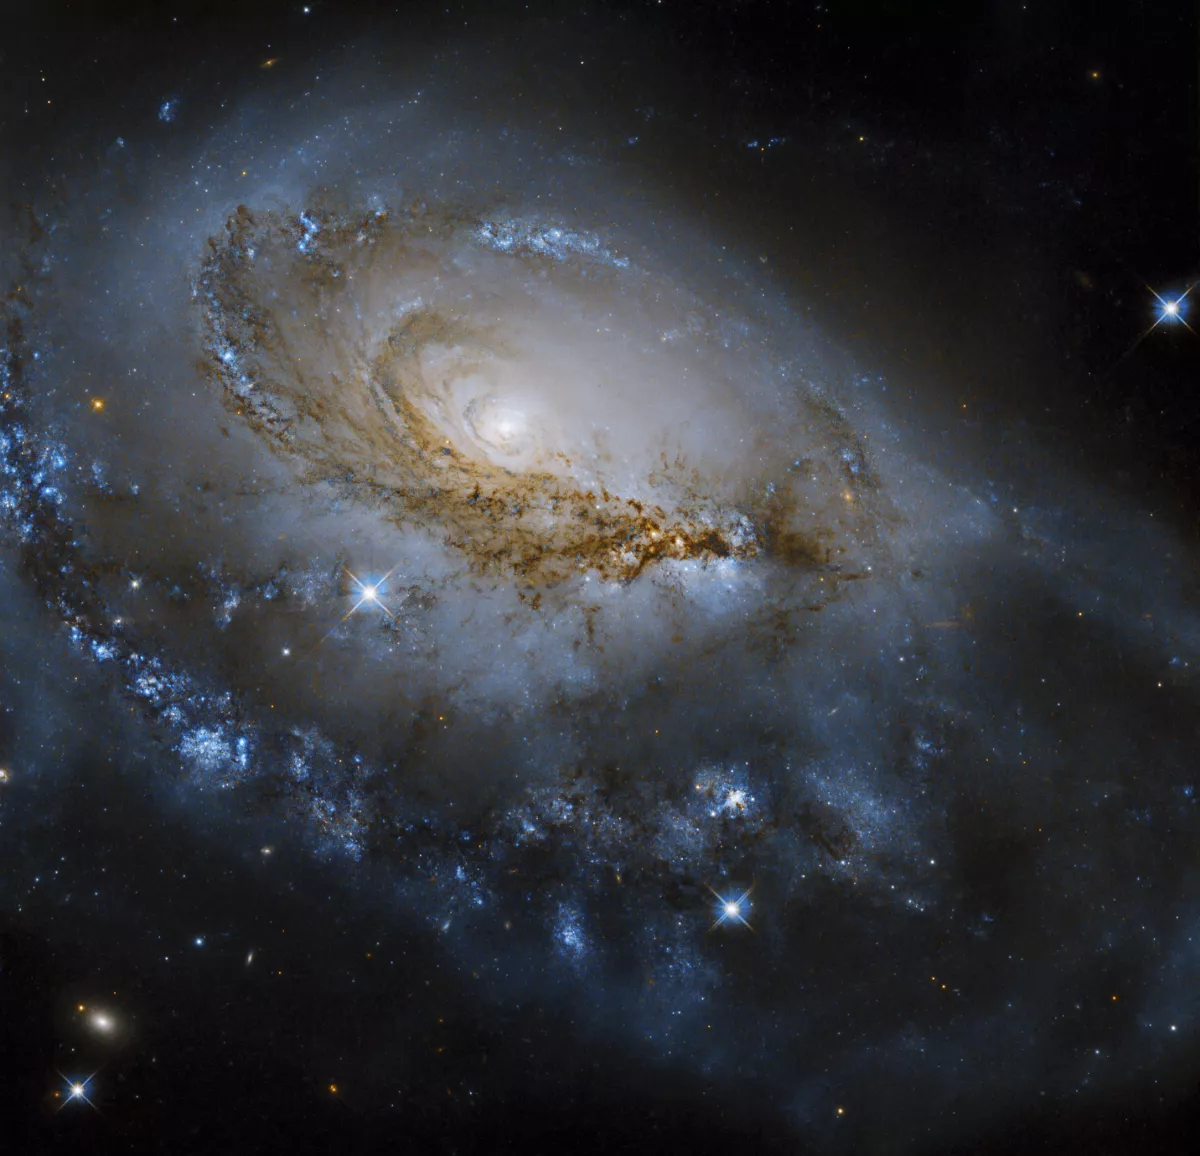 NGC 1961